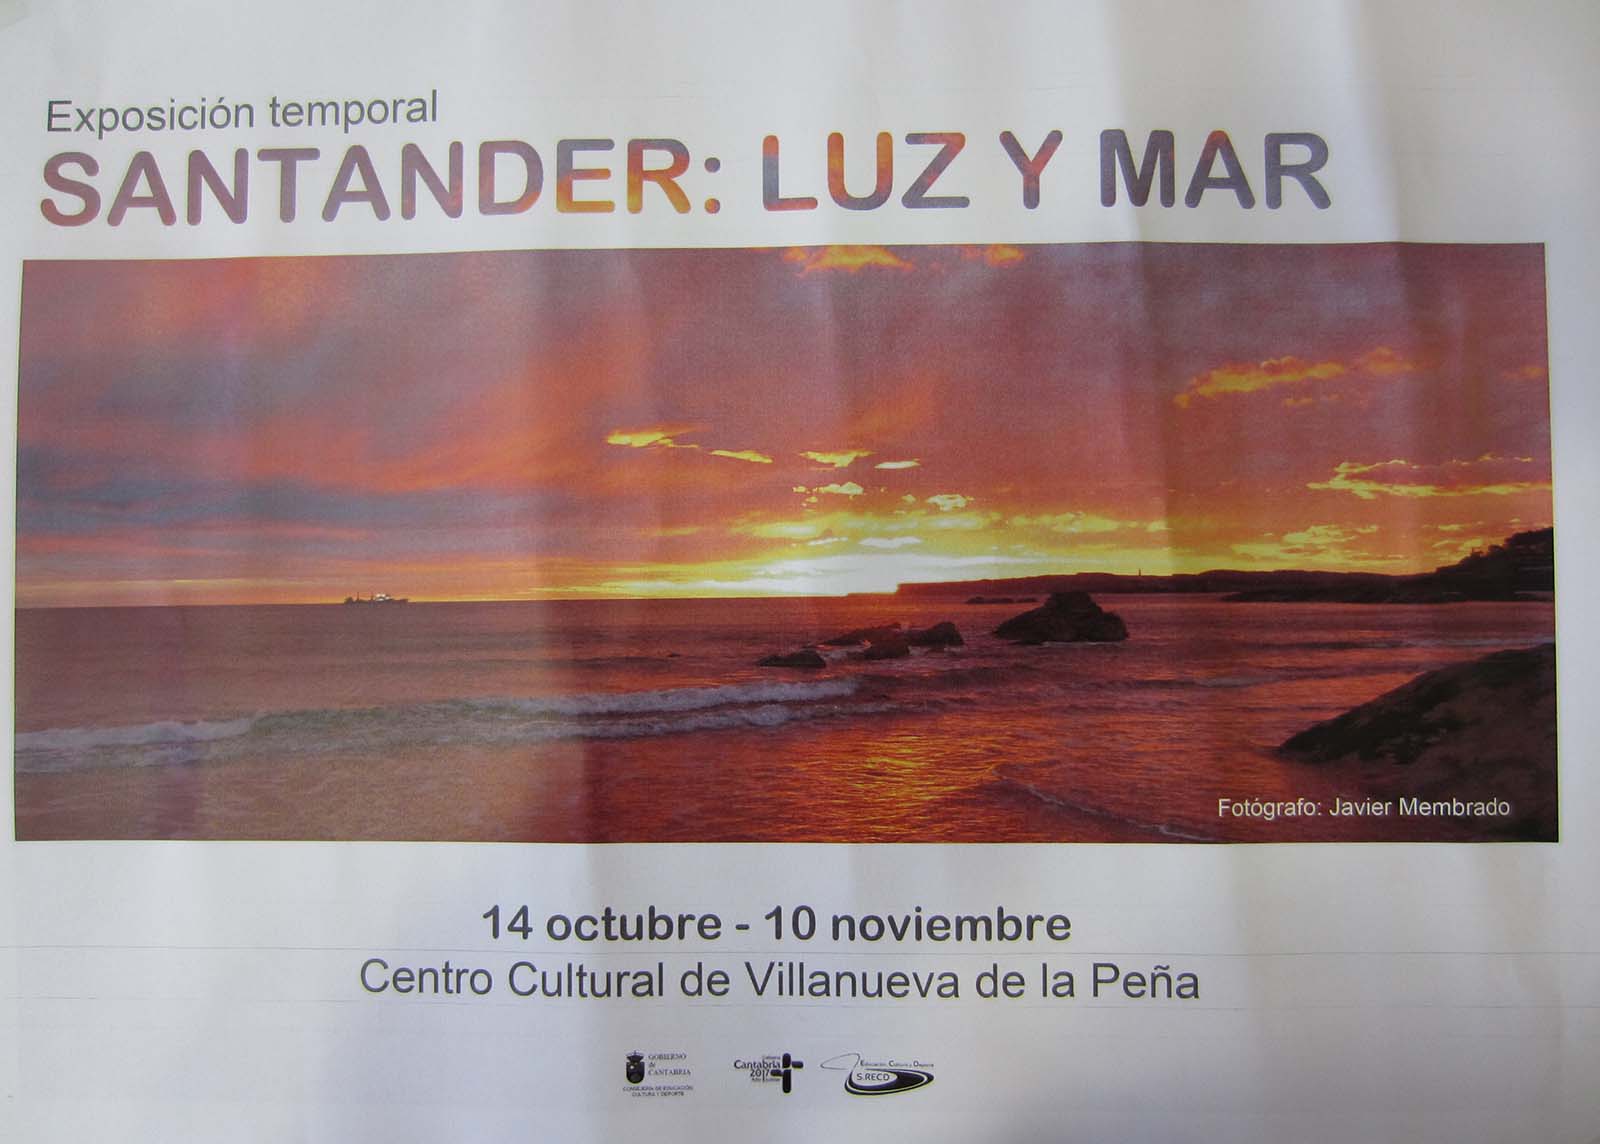 Santander: Luz y Mar